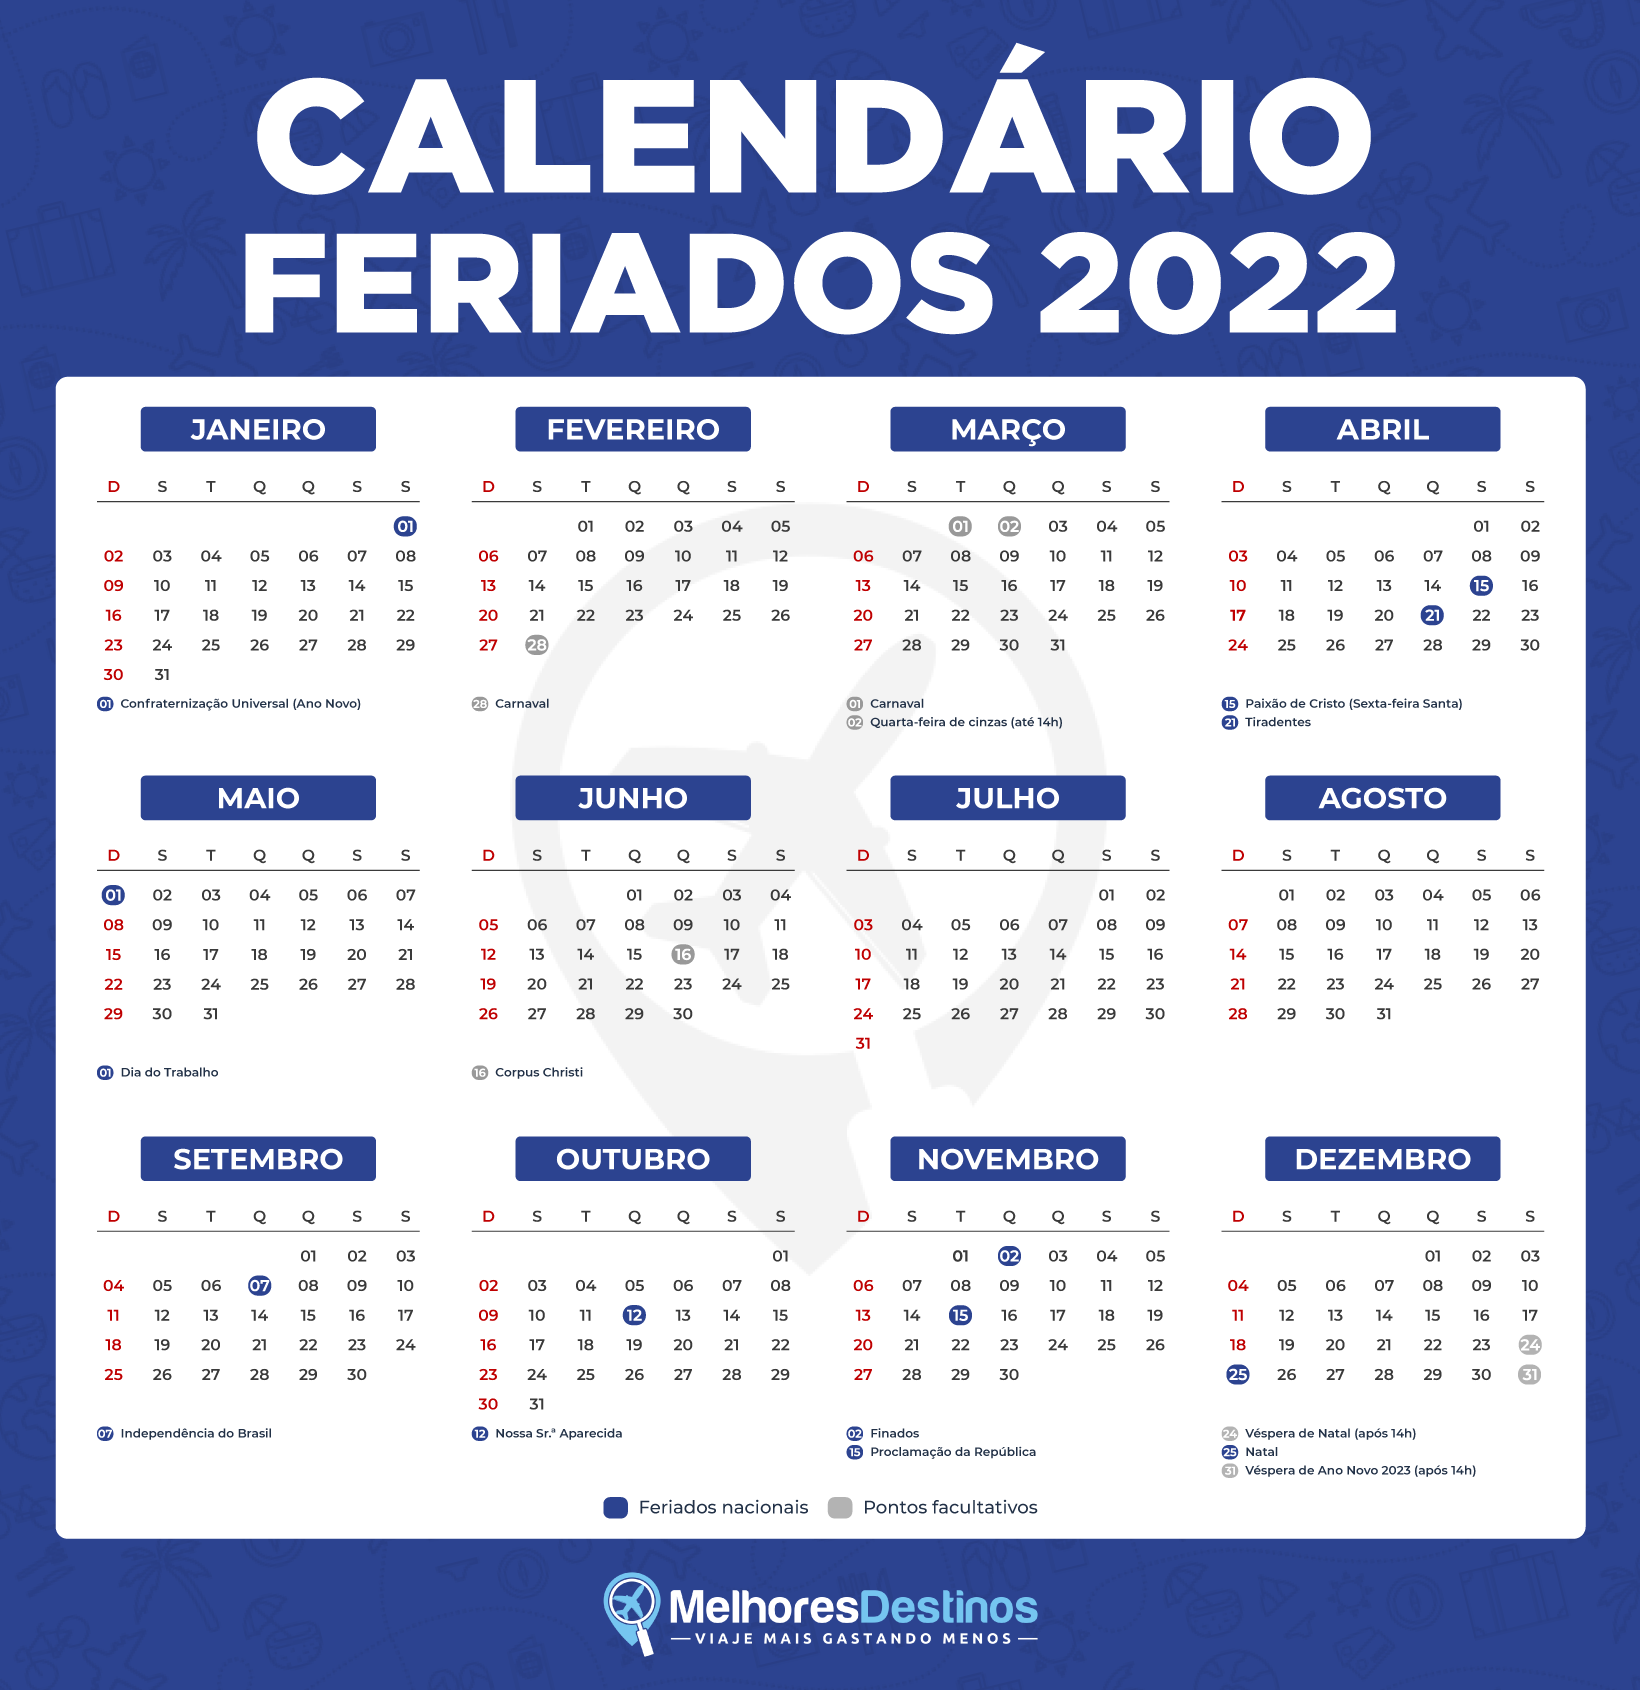 Calendario De Feriados 2024 Calendar 2024 All Holidays